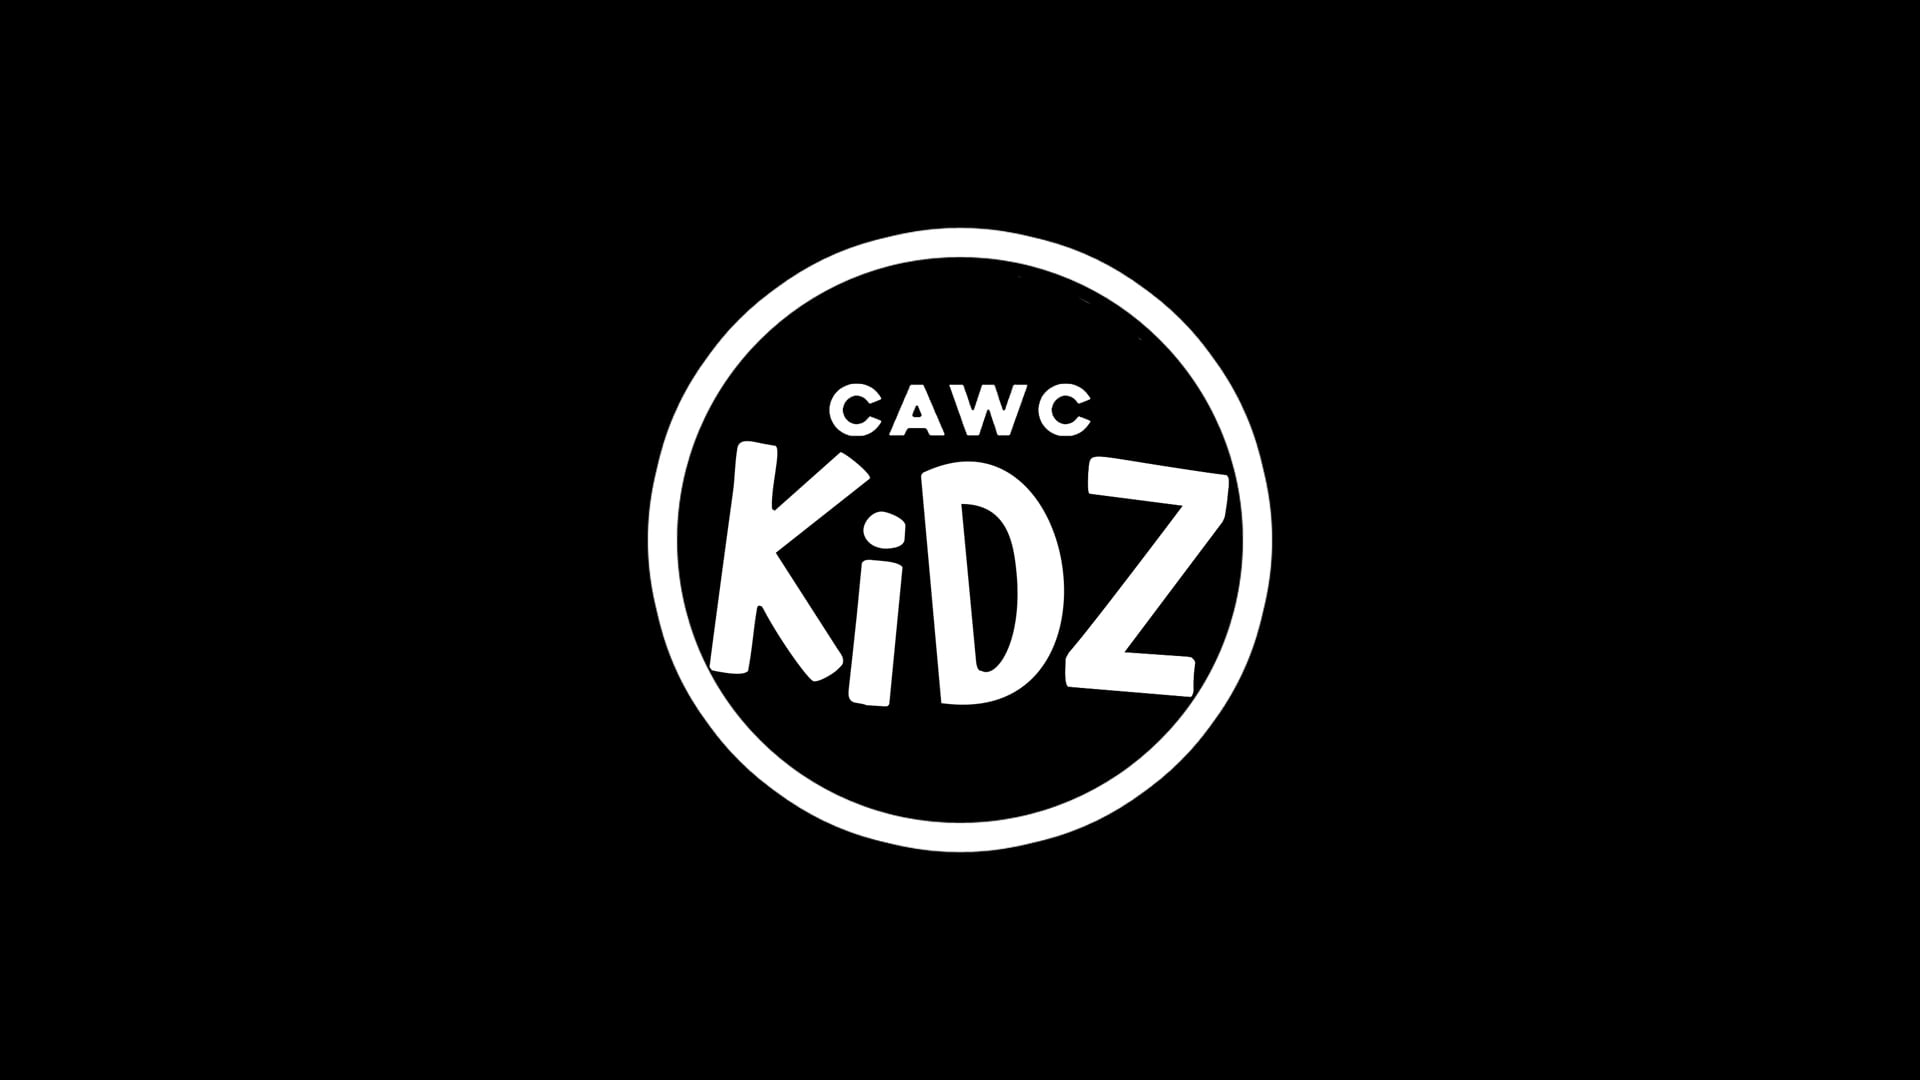 CAWC Kidz Simple Requests